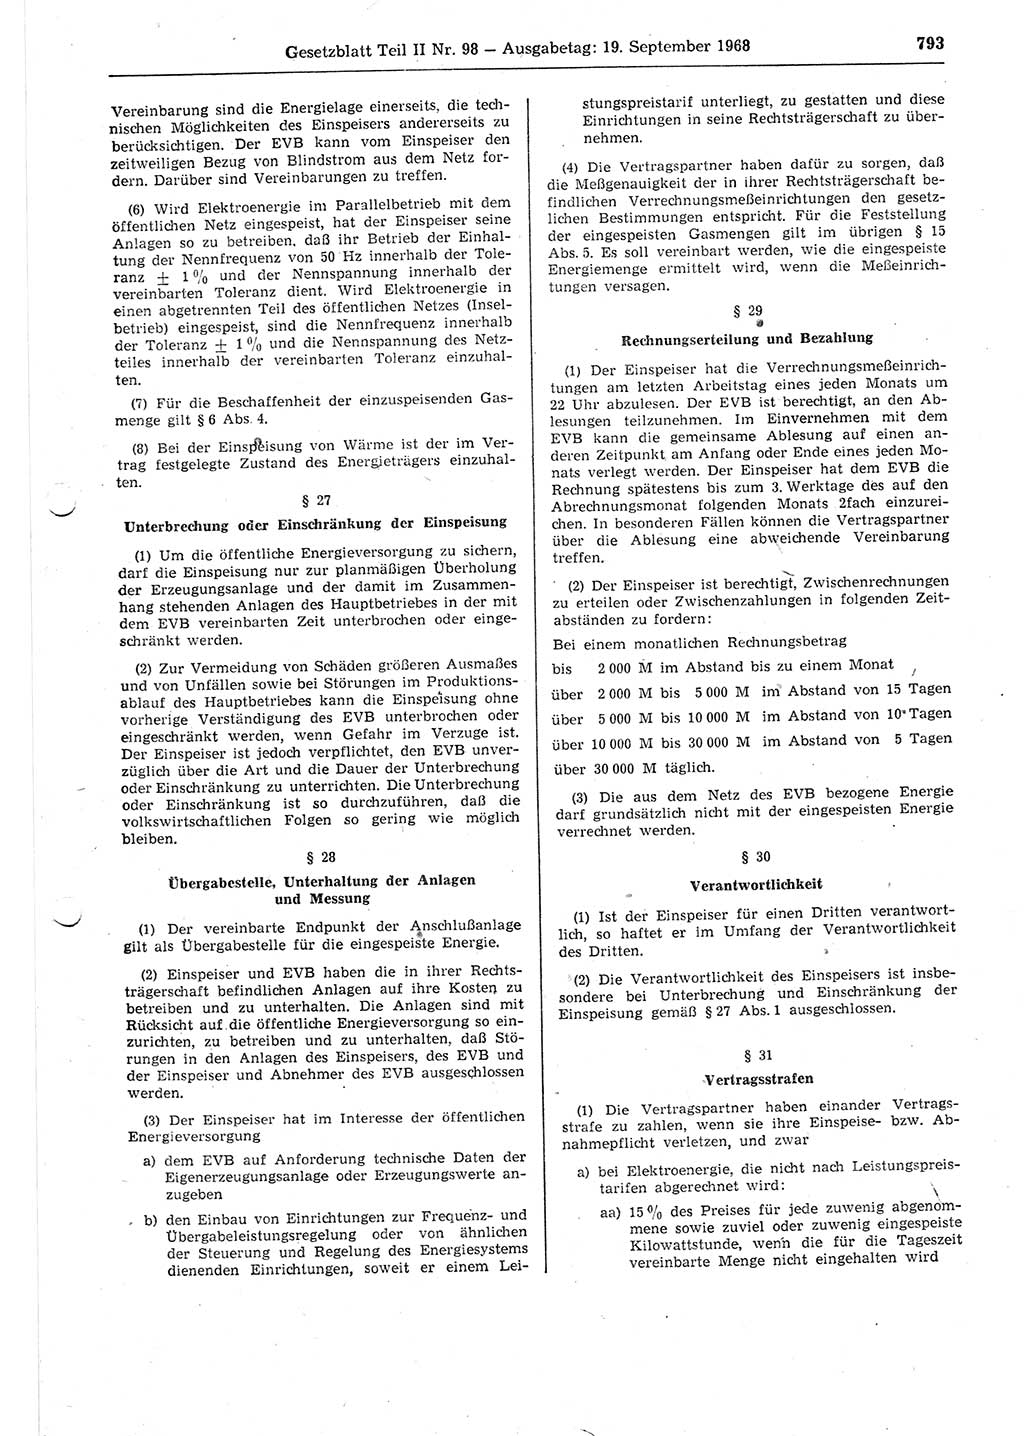 Gesetzblatt (GBl.) der Deutschen Demokratischen Republik (DDR) Teil ⅠⅠ 1968, Seite 793 (GBl. DDR ⅠⅠ 1968, S. 793)